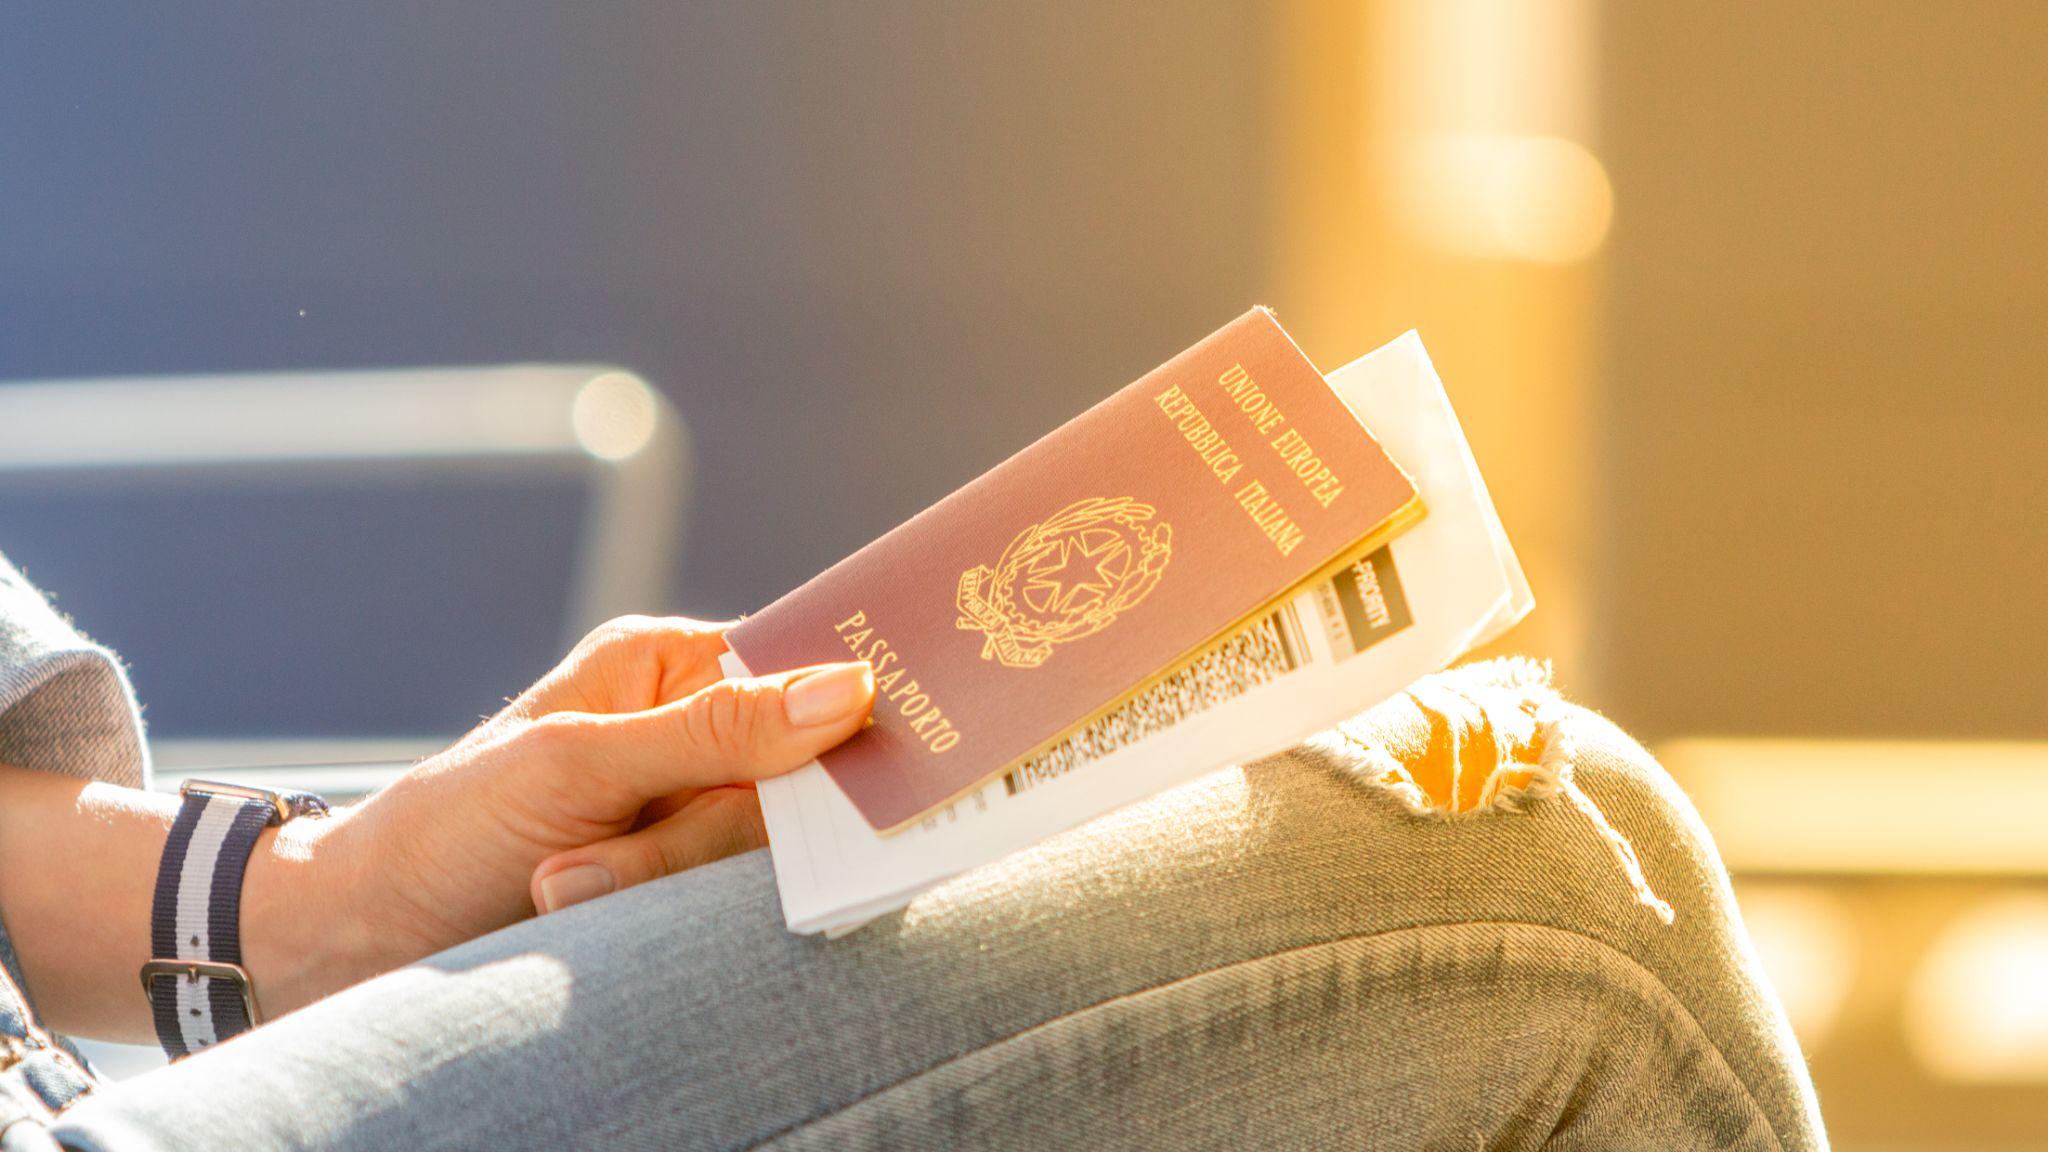 Pasaporte italiano y tarjeta de embarque en manos de una mujer que espera la salida de un vuelo en la sala de espera.